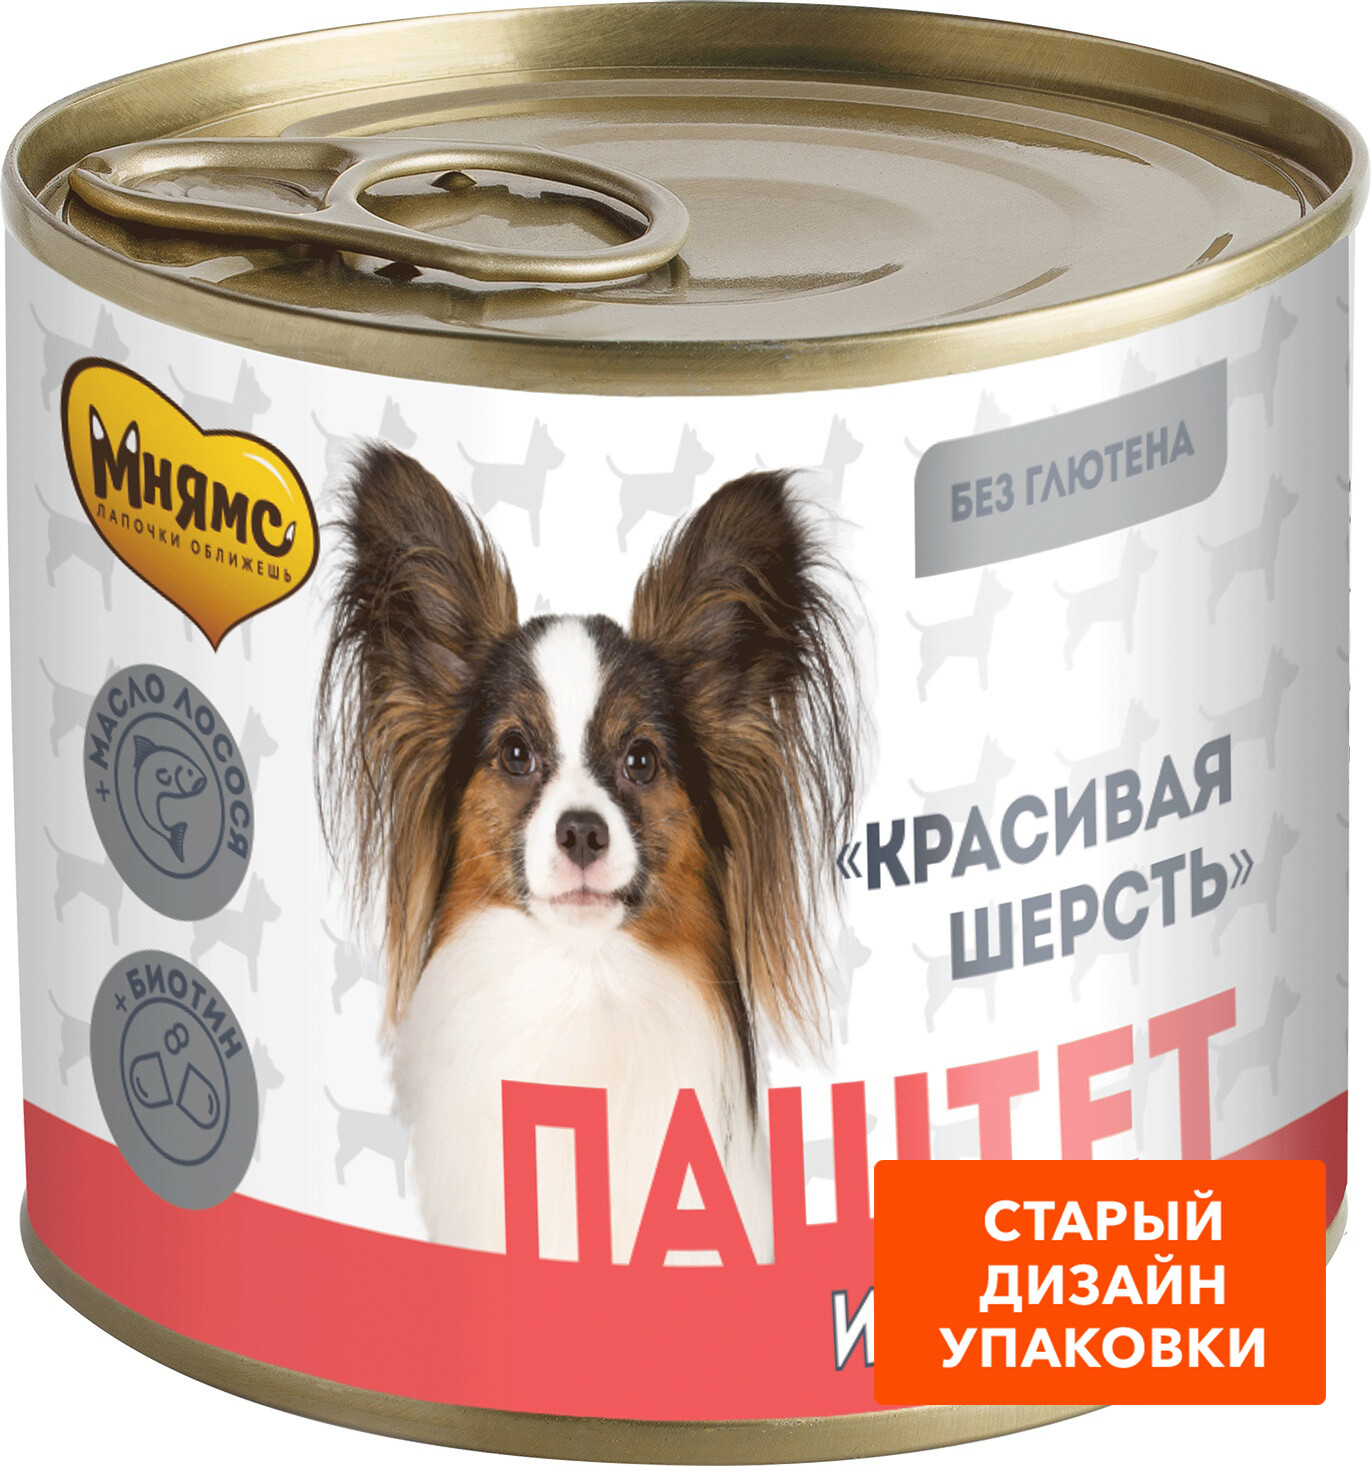 Влажный корм для собак МНЯМС Красивая шерсть ягненок паштет консервы 200 г (705021) - Фото 5